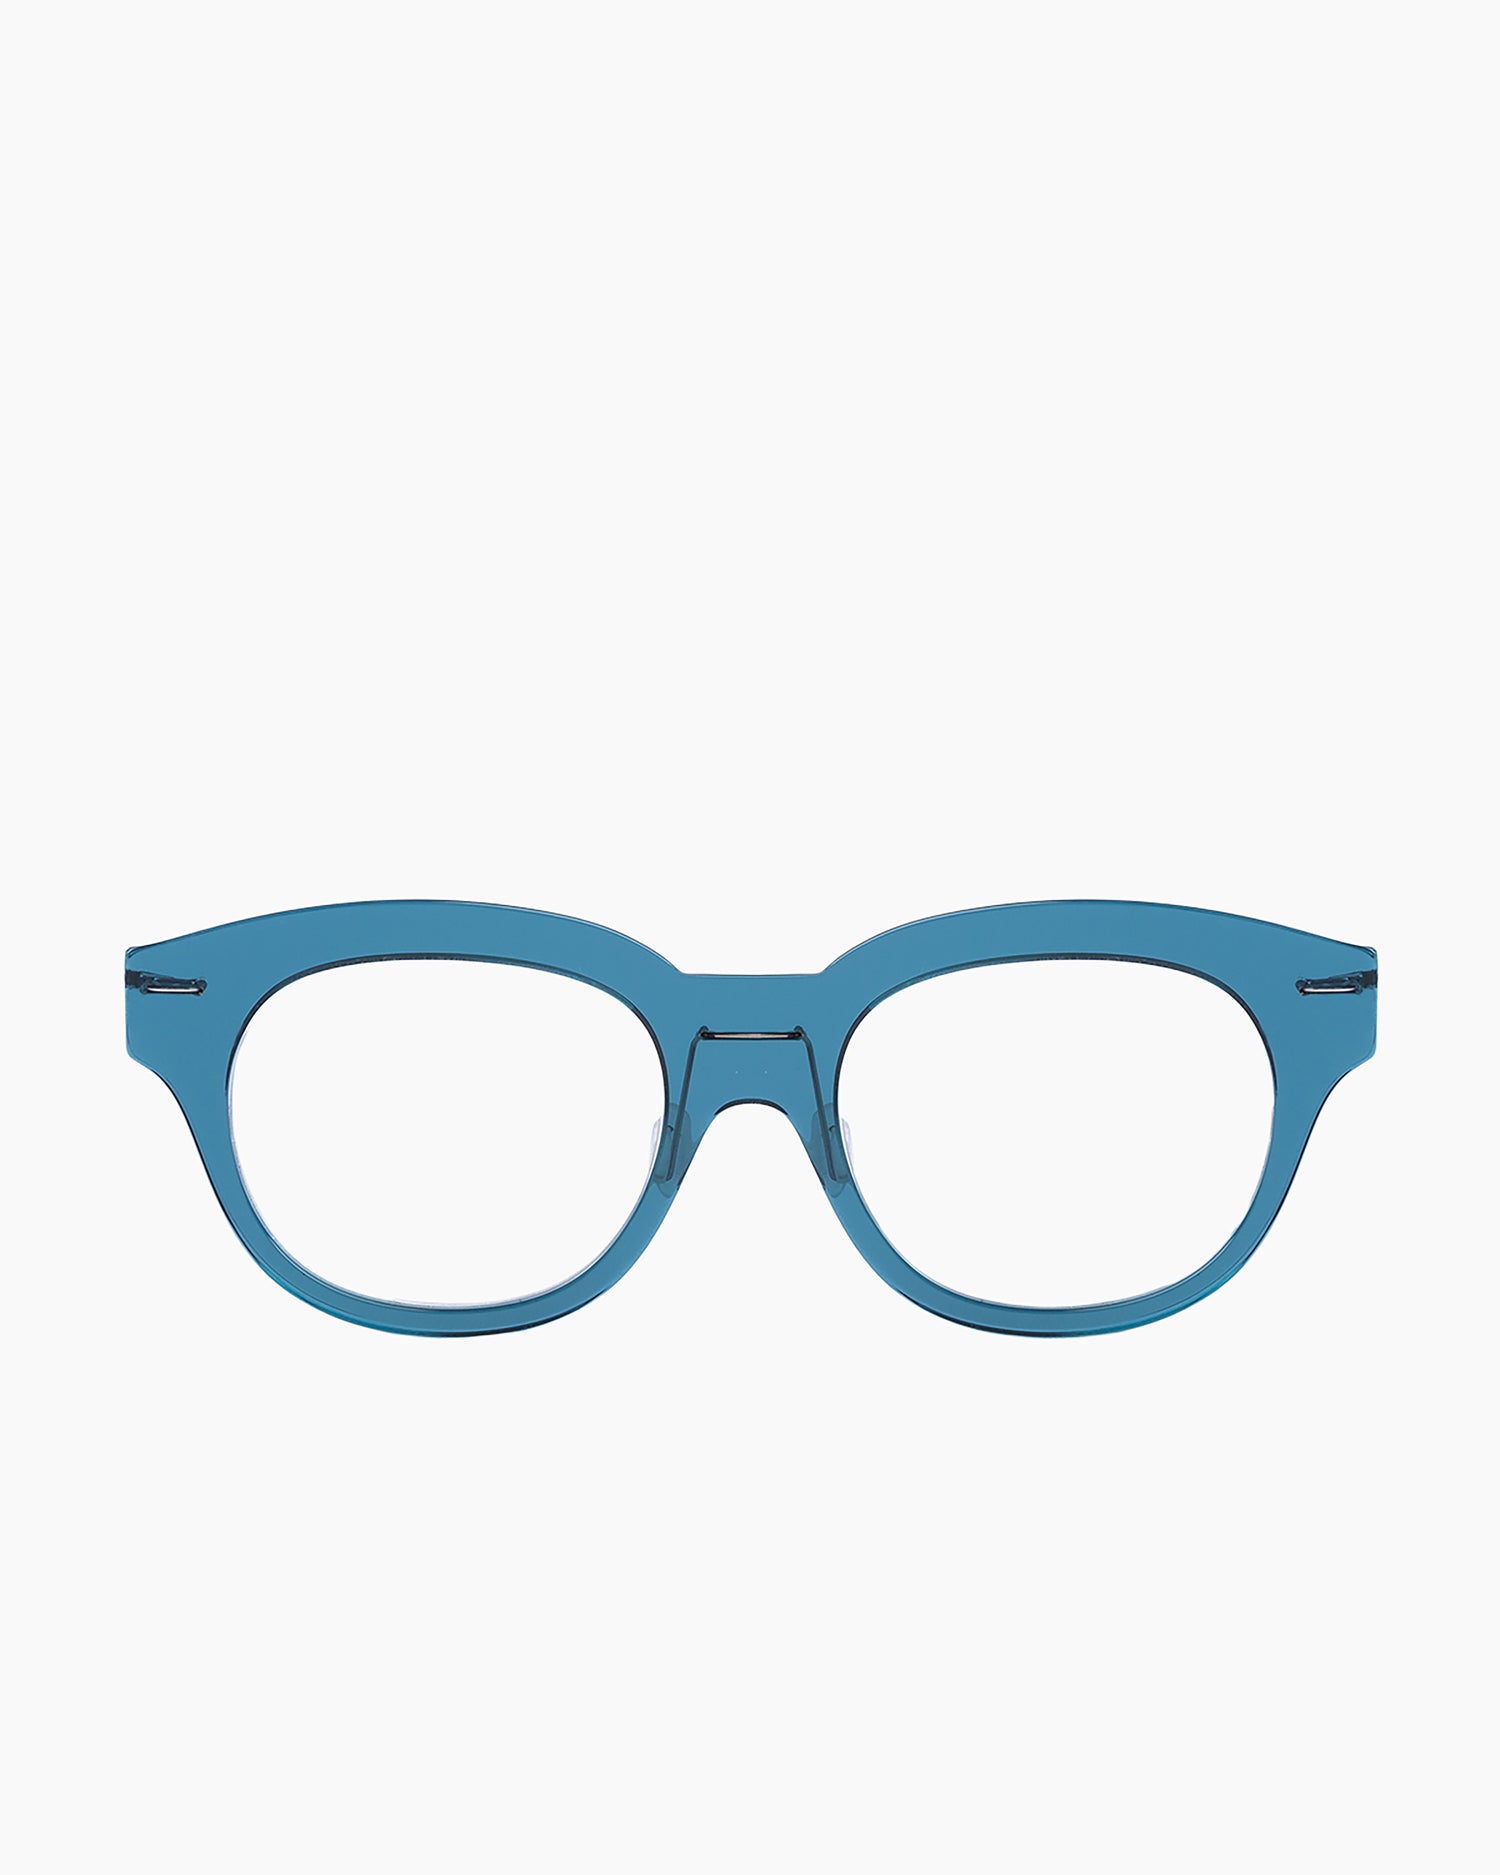 Monogram Marie-Sophie Dion - Belanger - Blu | glasses bar:  Marie-Sophie Dion